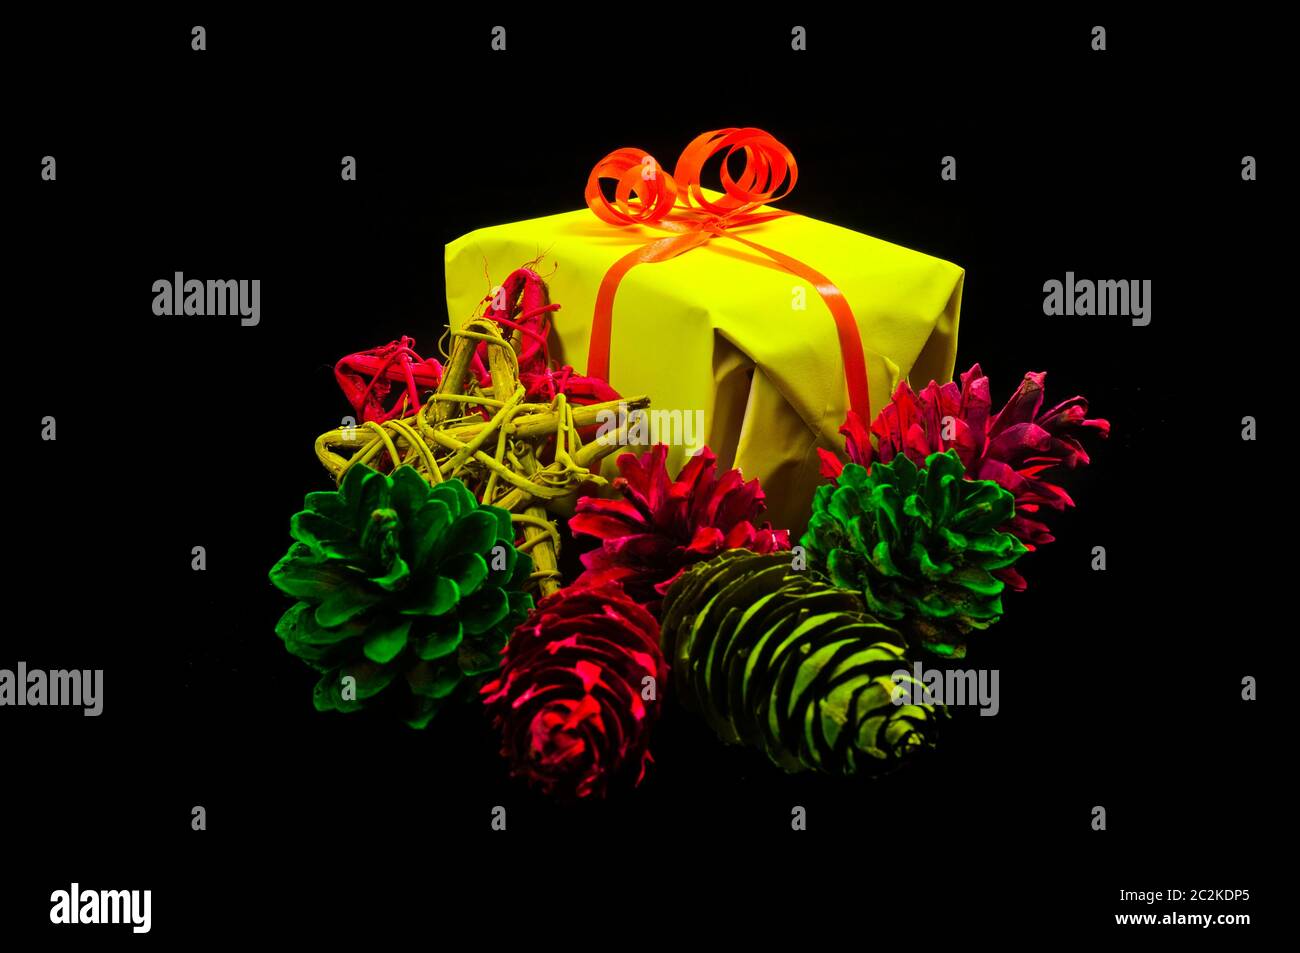 Geschenke, Weihnachtskugeln und Sterne in neonfarben auf schwarzem Hintergrund Stock Photo